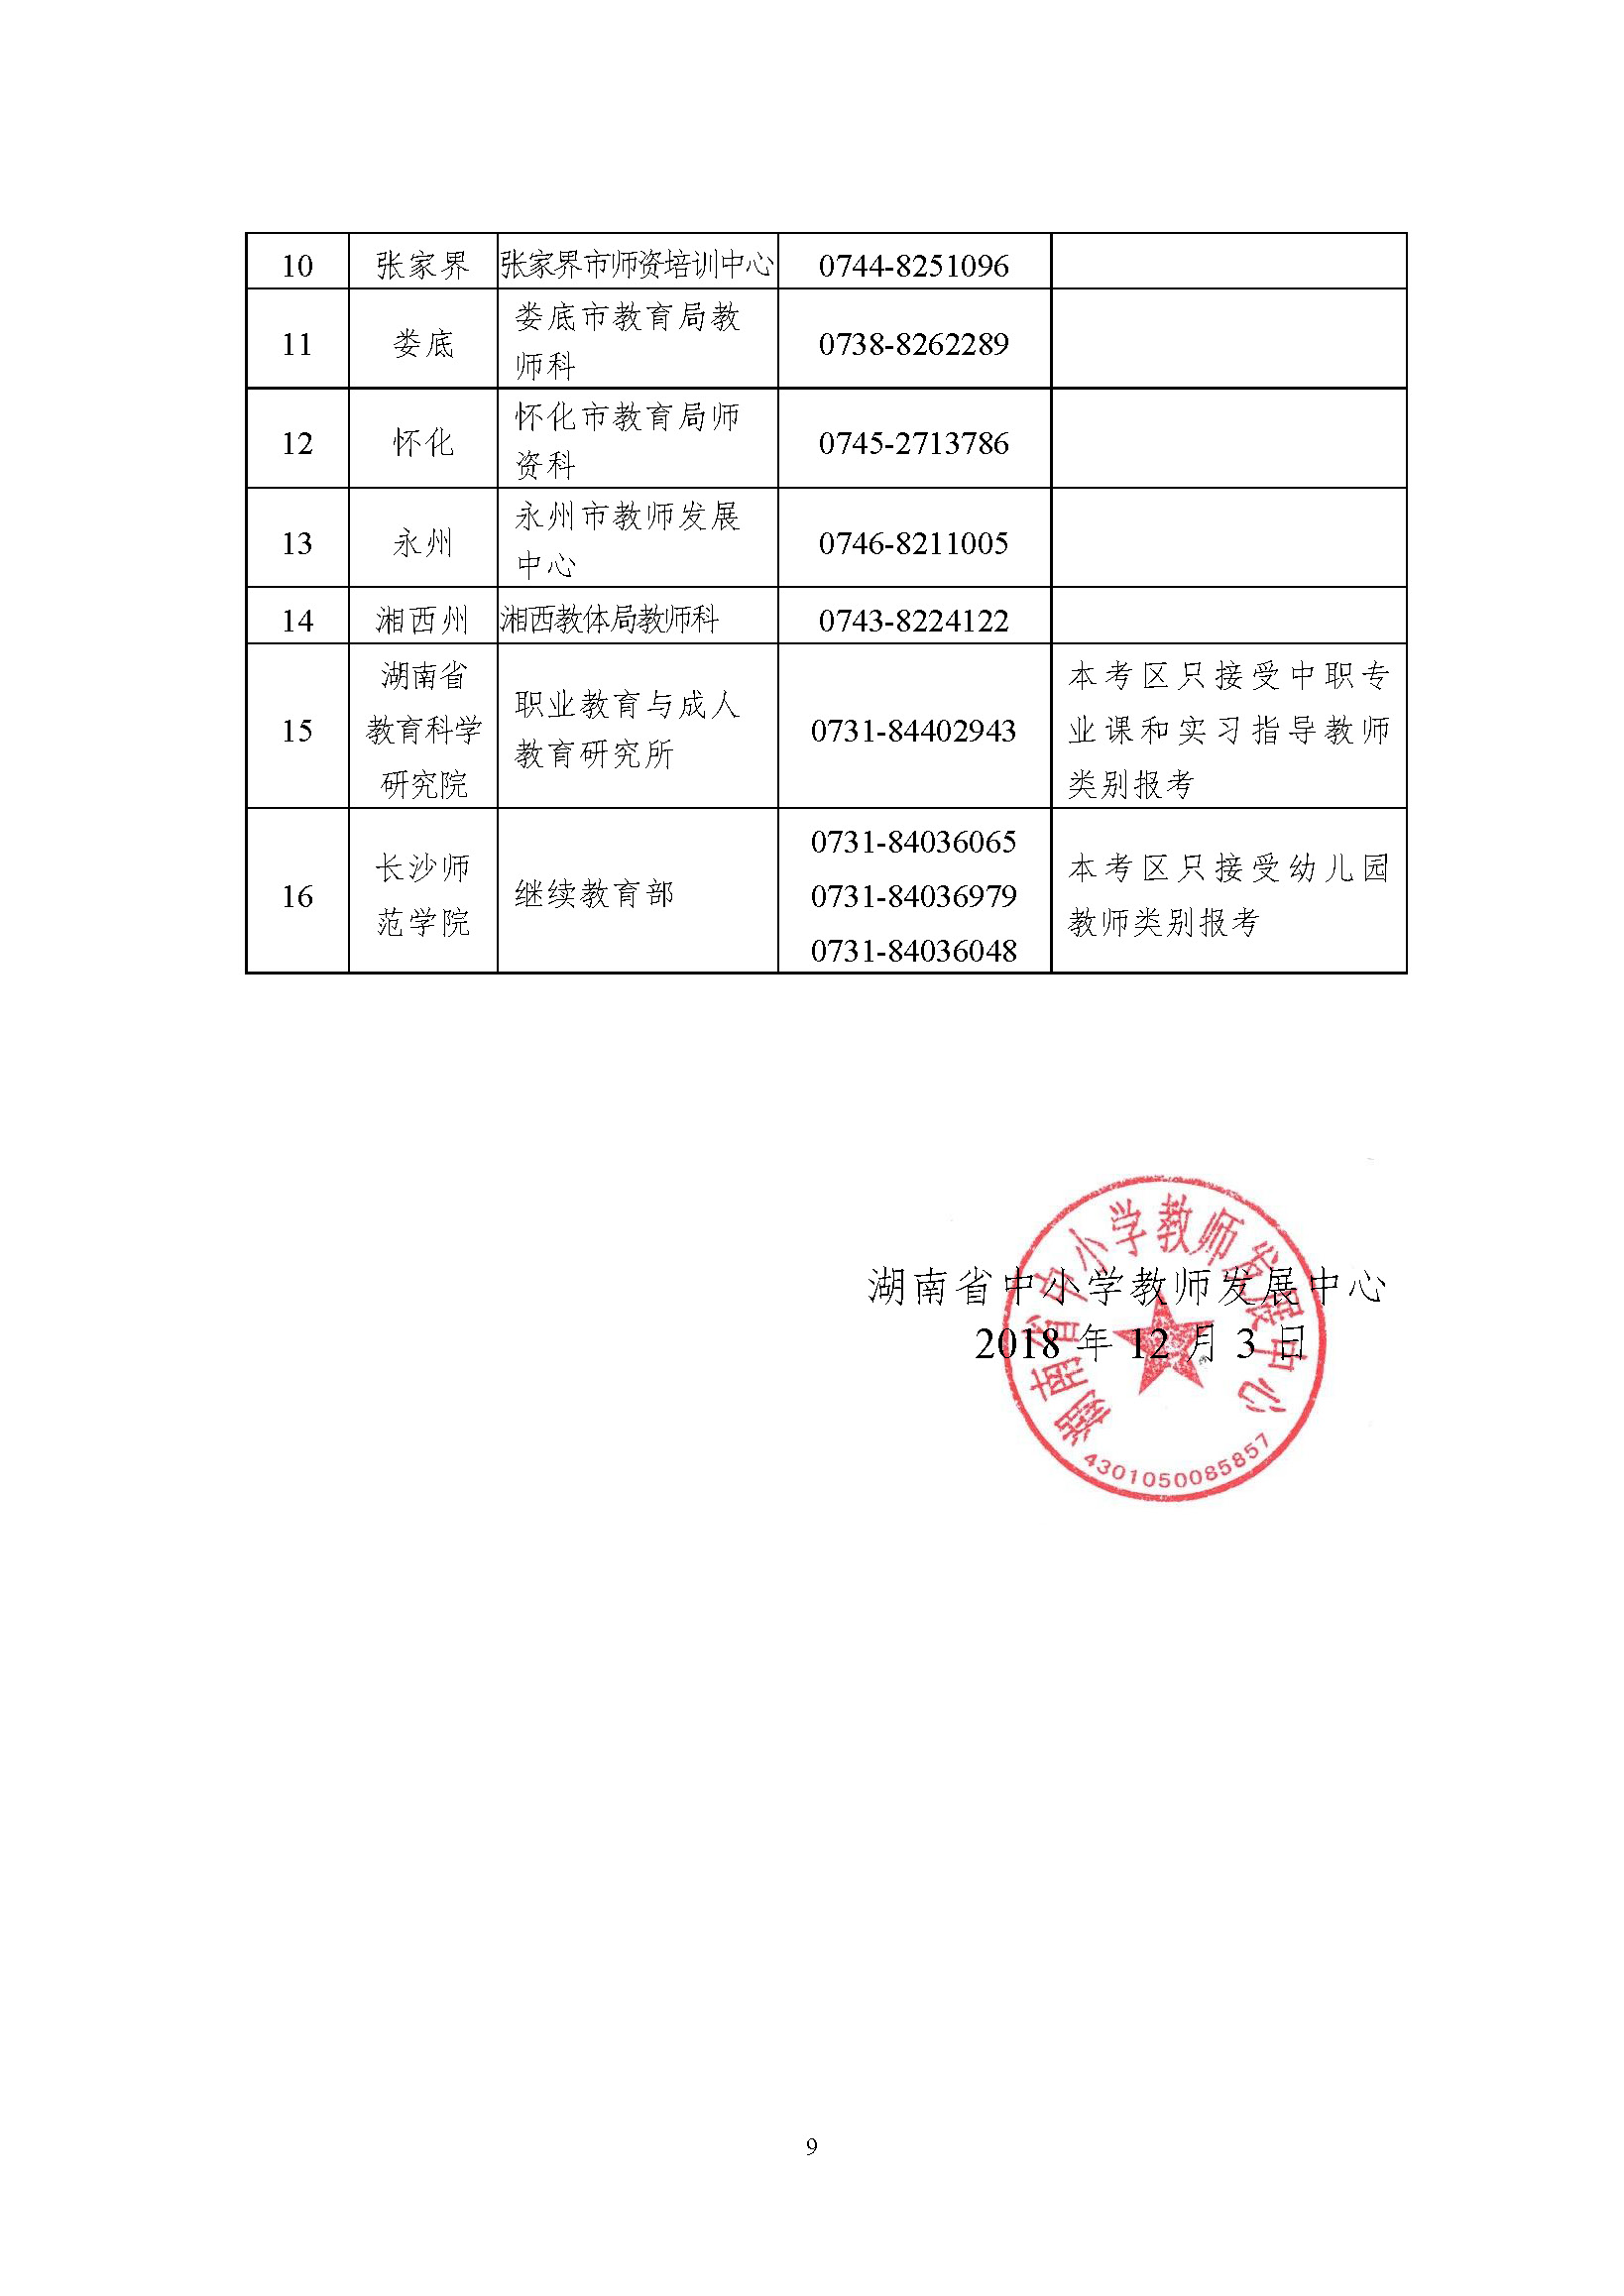 2018年下半年湖南中小学教师资格考试 (面试)公告